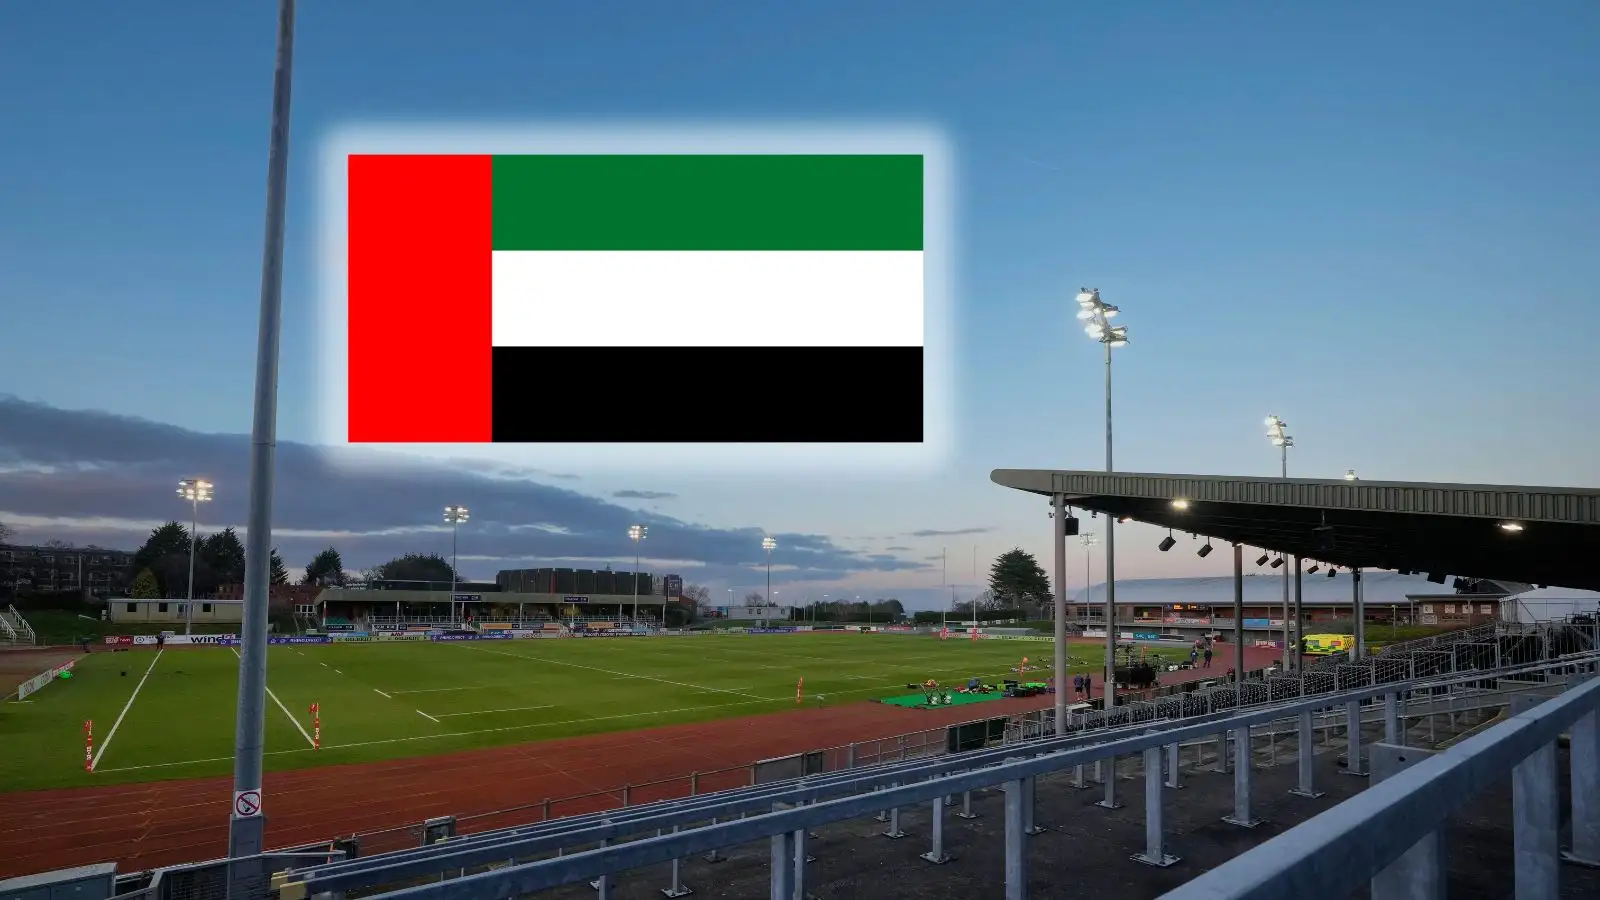 Stadiwm CSM, UAE flag